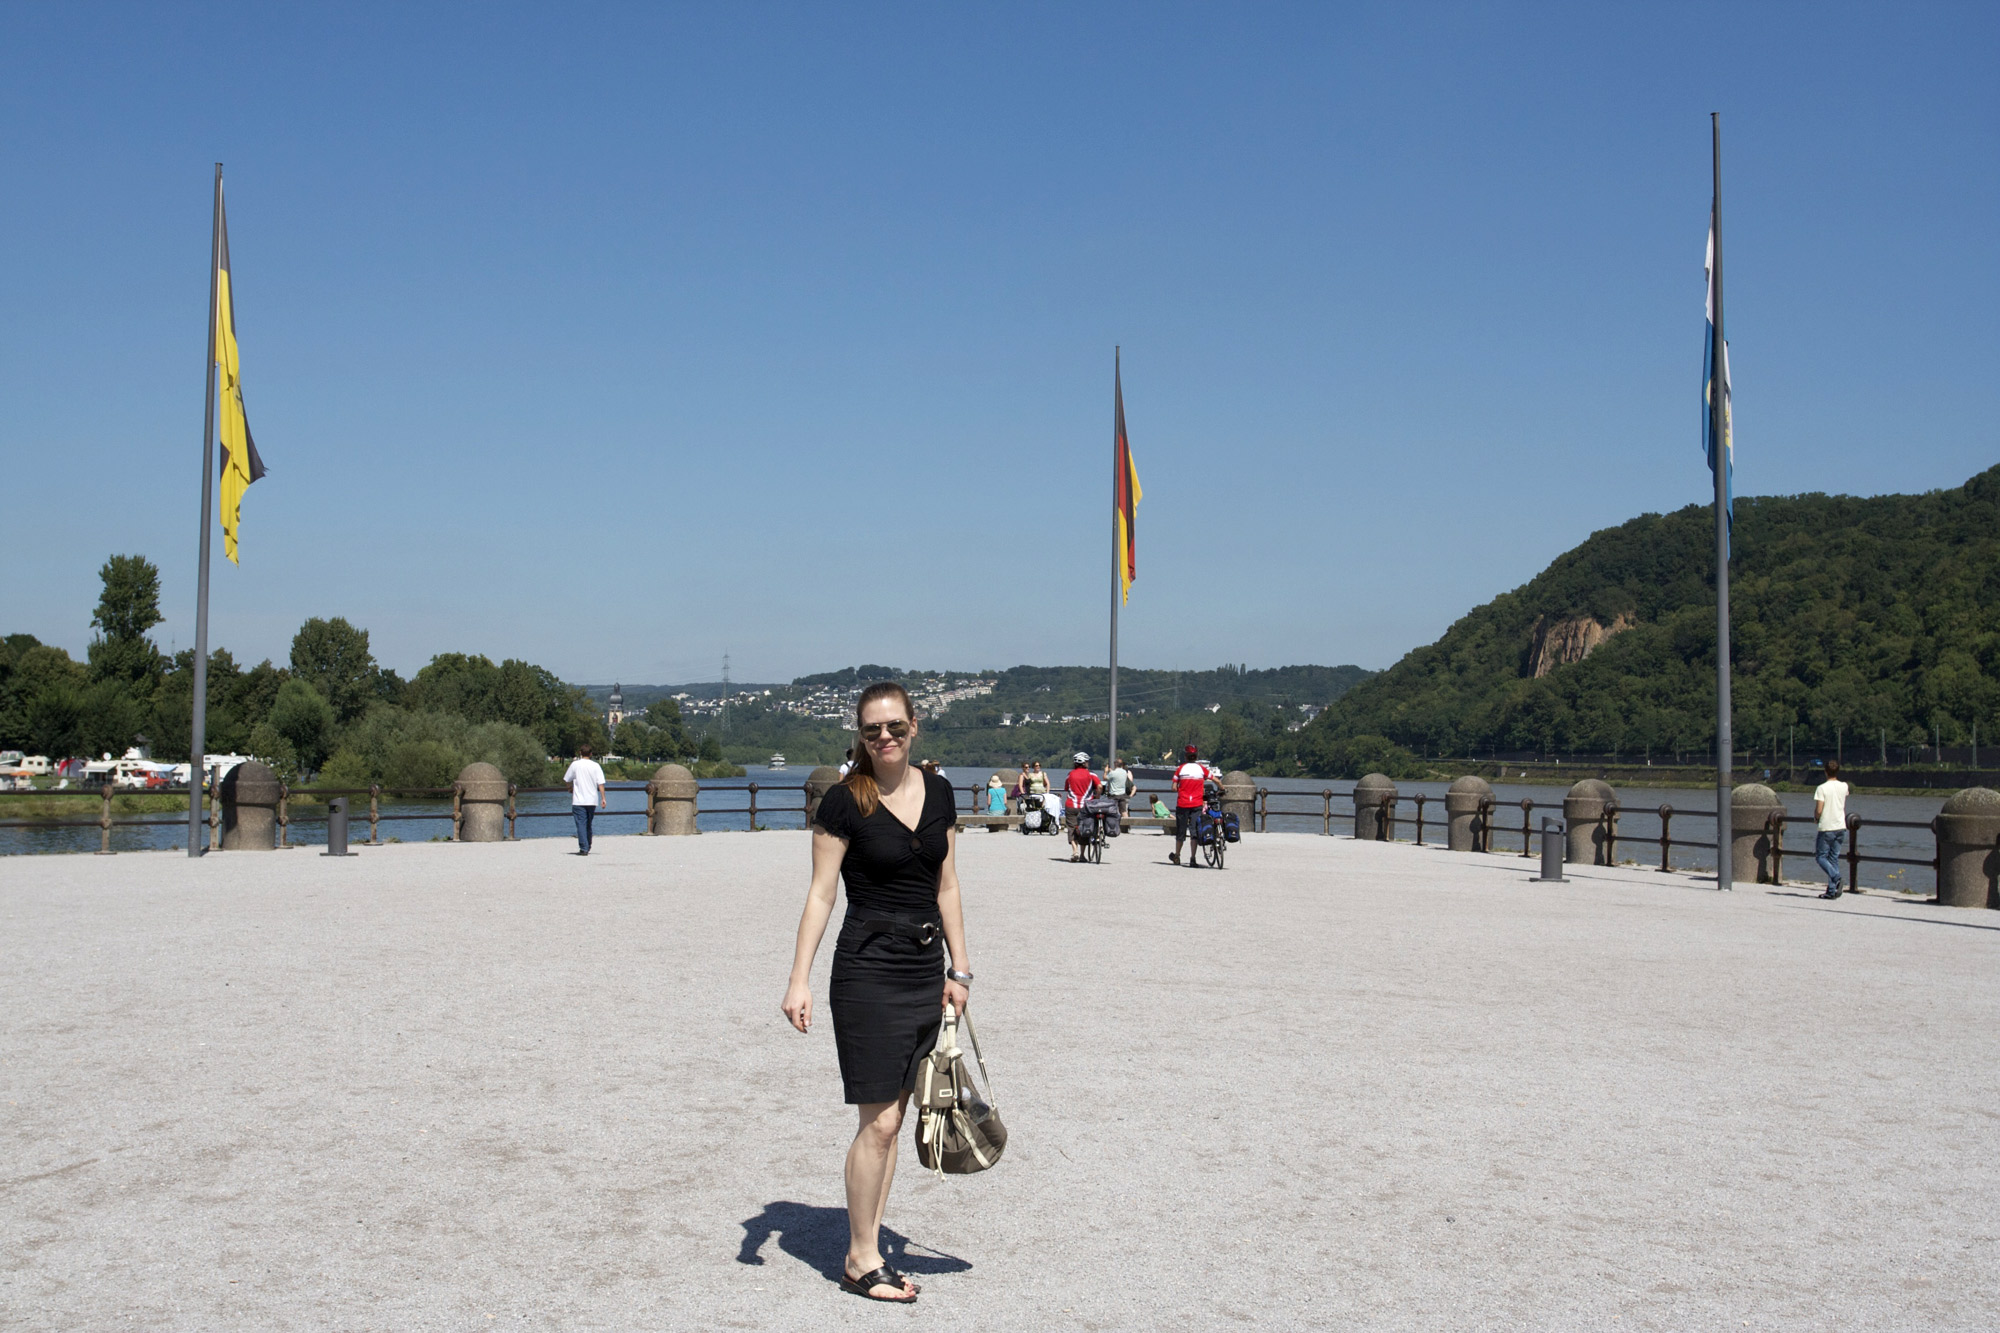 Here I am where the Rhine and Mosel converge